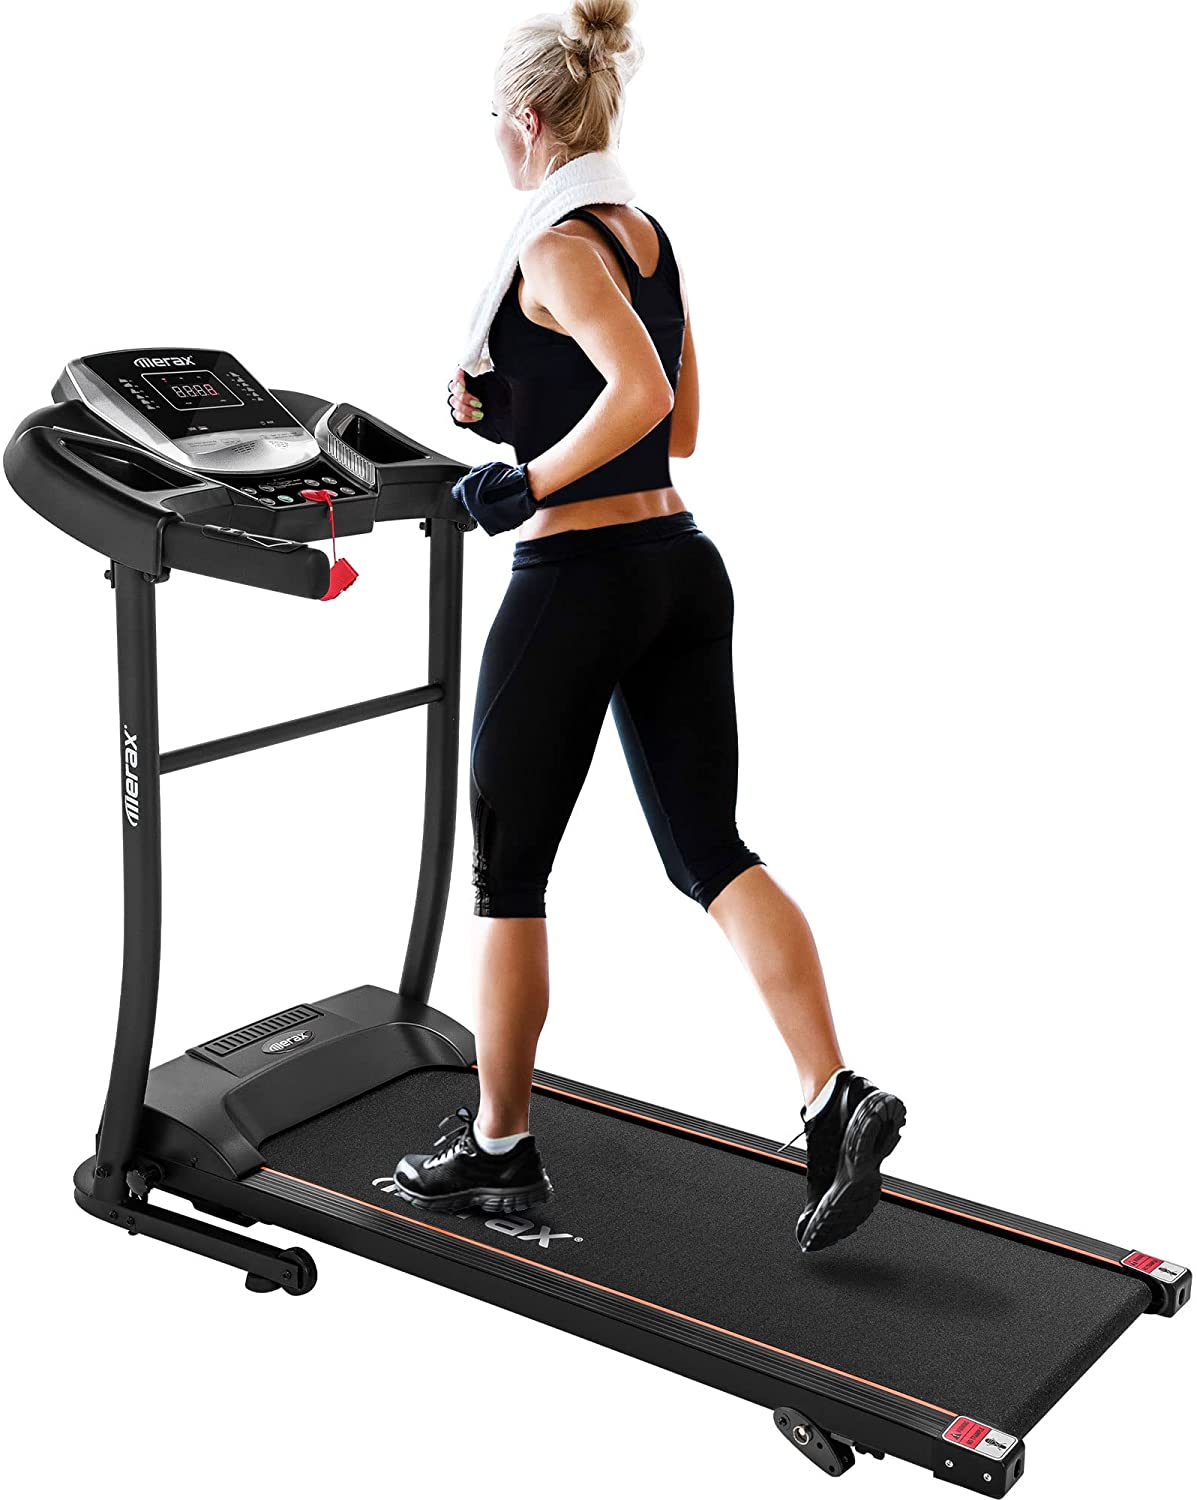 Best Treadmill Under 1500 dollars